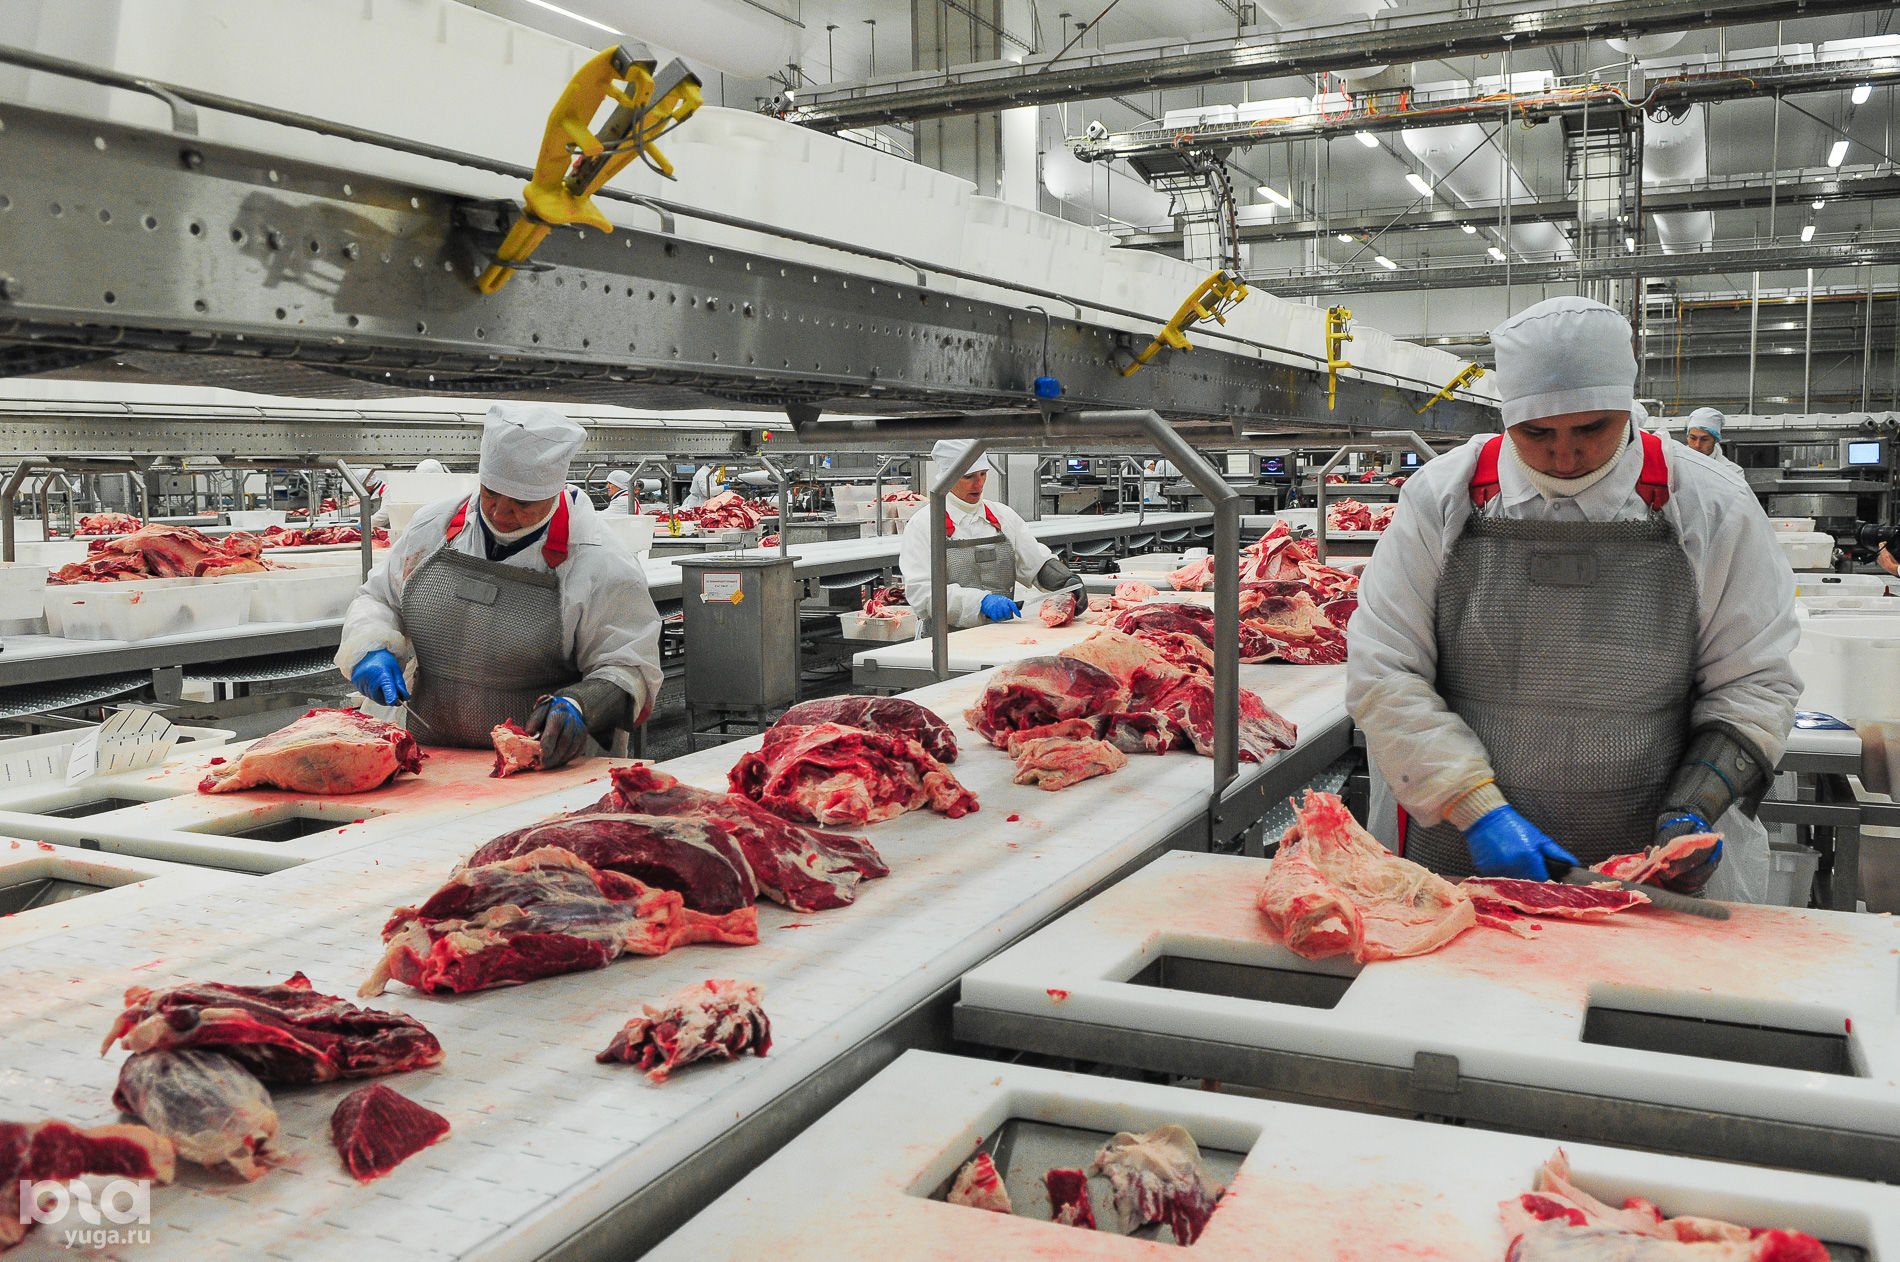 Производители мясных продуктов. Предприятия мясной промышленности. Мясоперерабатывающий завод. Мясная промышленность. Мясоперерабатывающая промышленность.